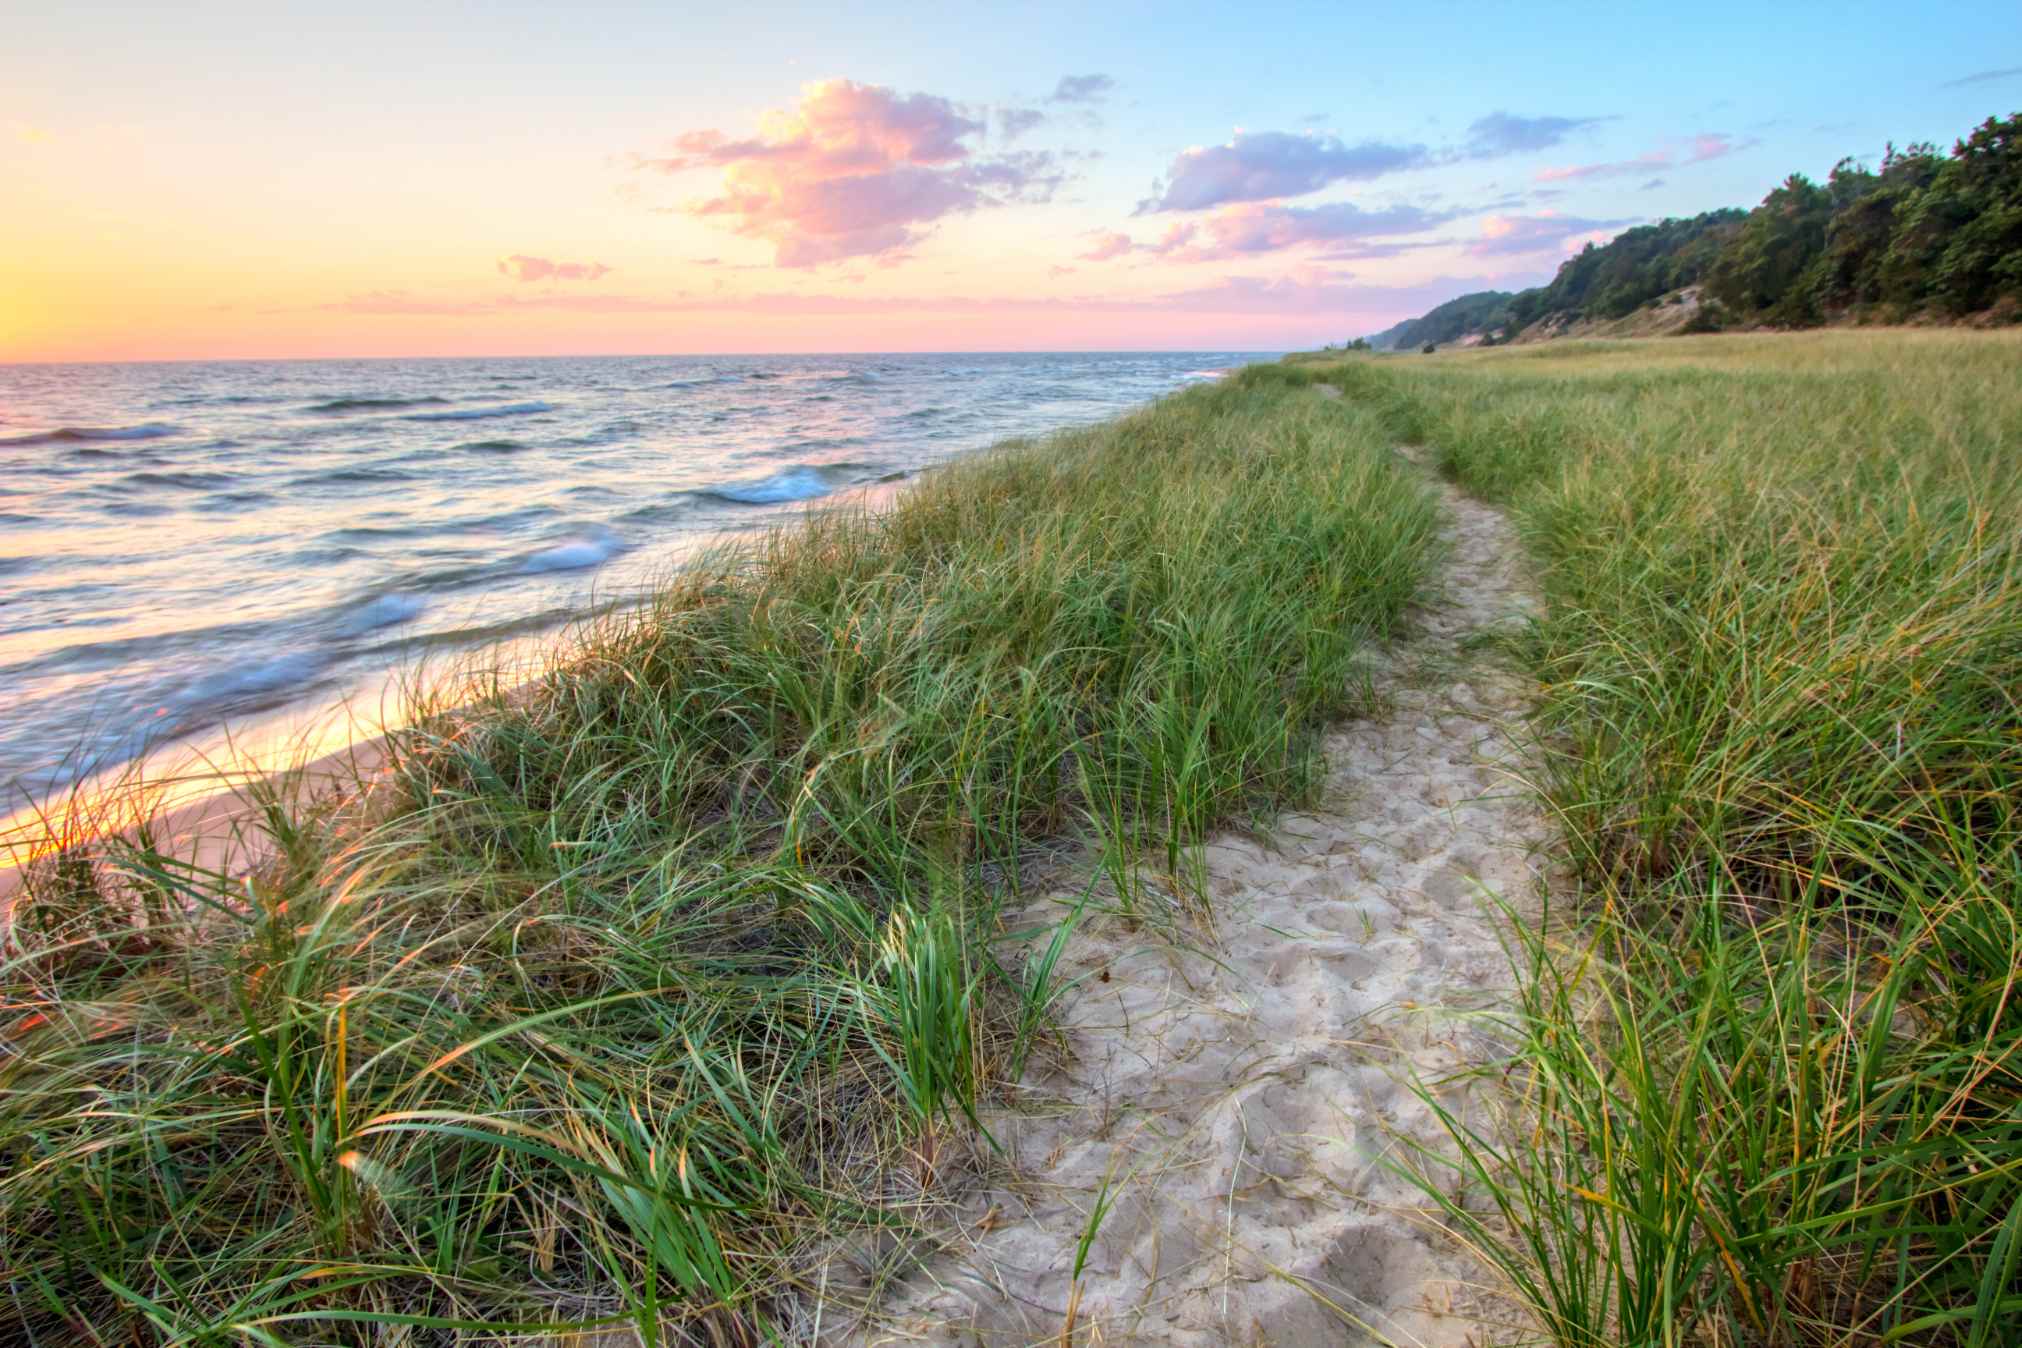 Sandy path winds along the shore of Lake Michigan